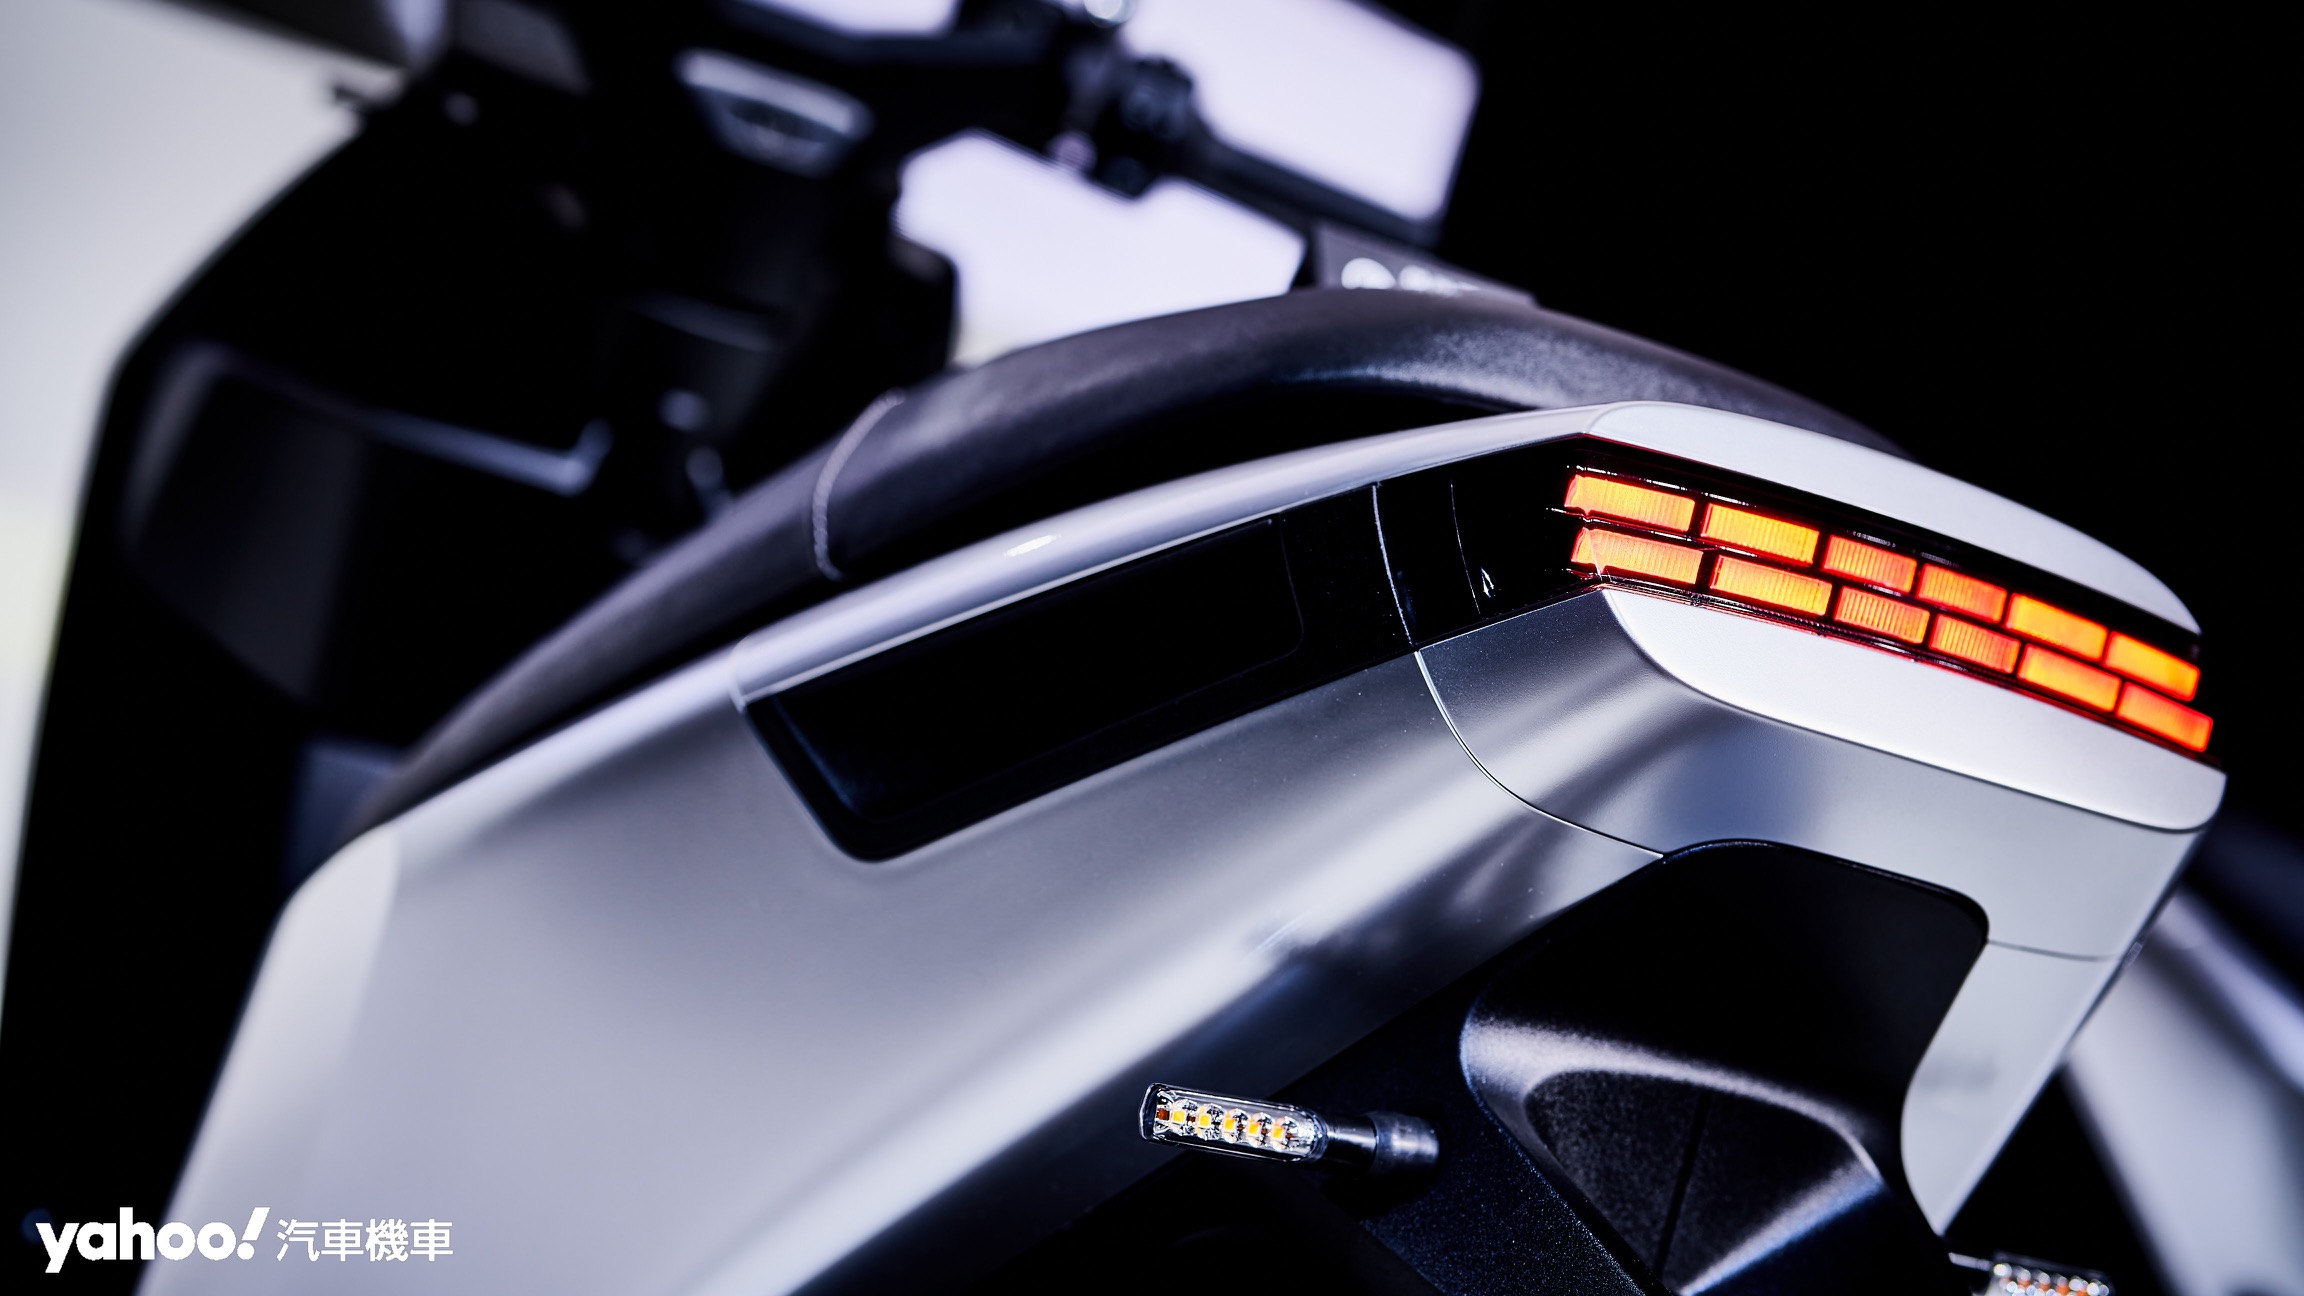 上揚式的車尾與更簡約的線條，Gogoro Pulse在尾燈也採取點陣式LED架構以提升尾部鑑別度與強化設計感。